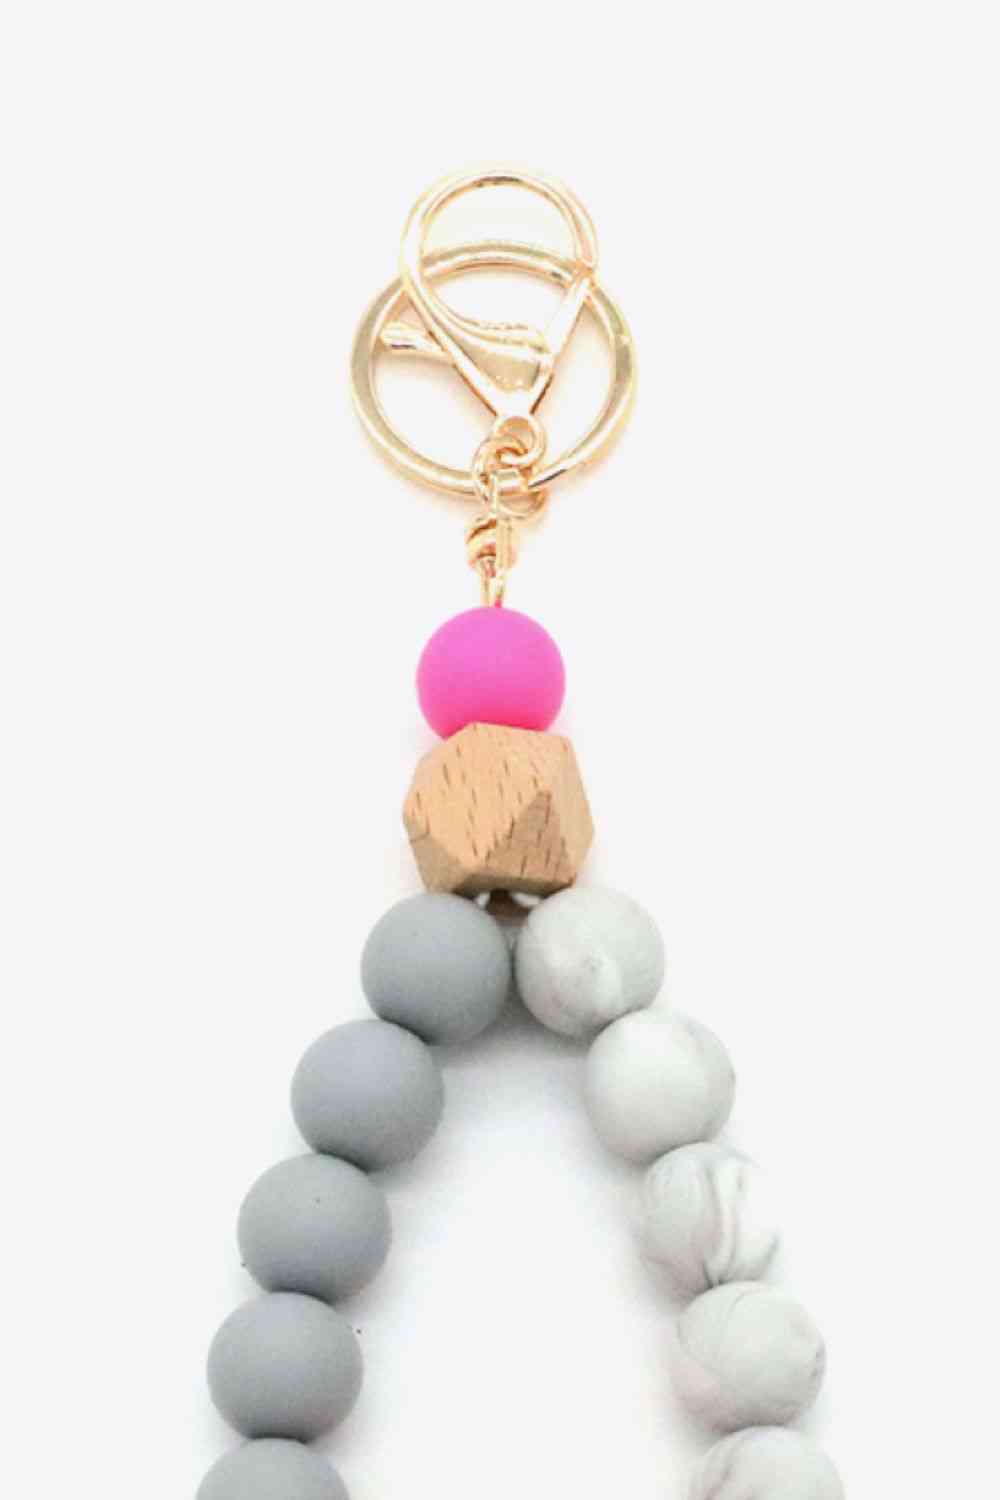 Assortiment de 2 porte-clés avec bracelet en perles multicolores